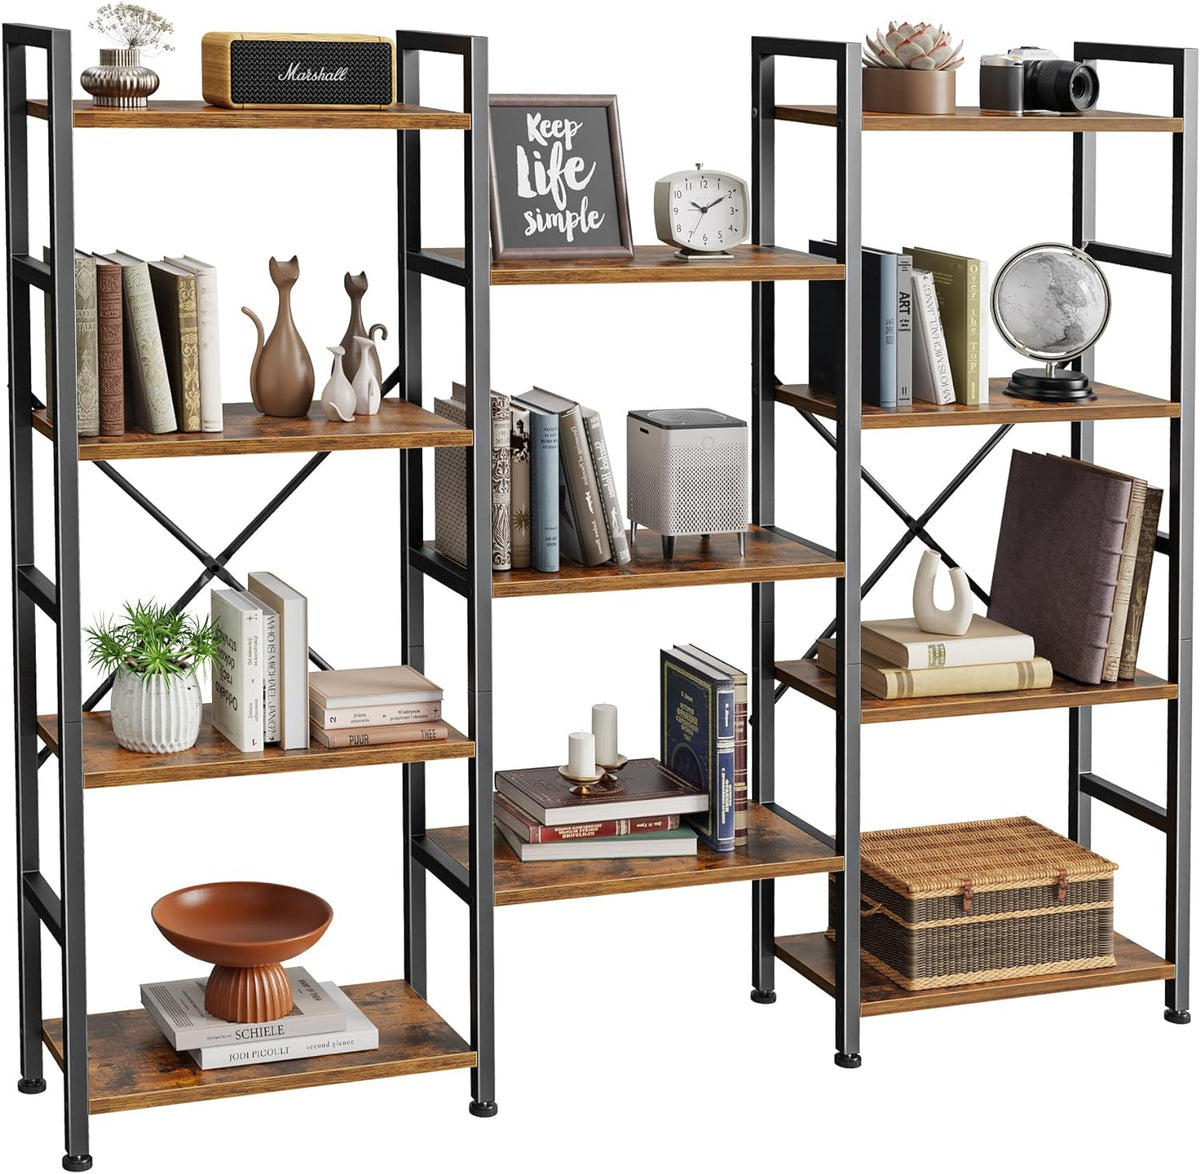 SUPERJARE Triple 4 Tier Bookshelf with 11 Open Display Shelves